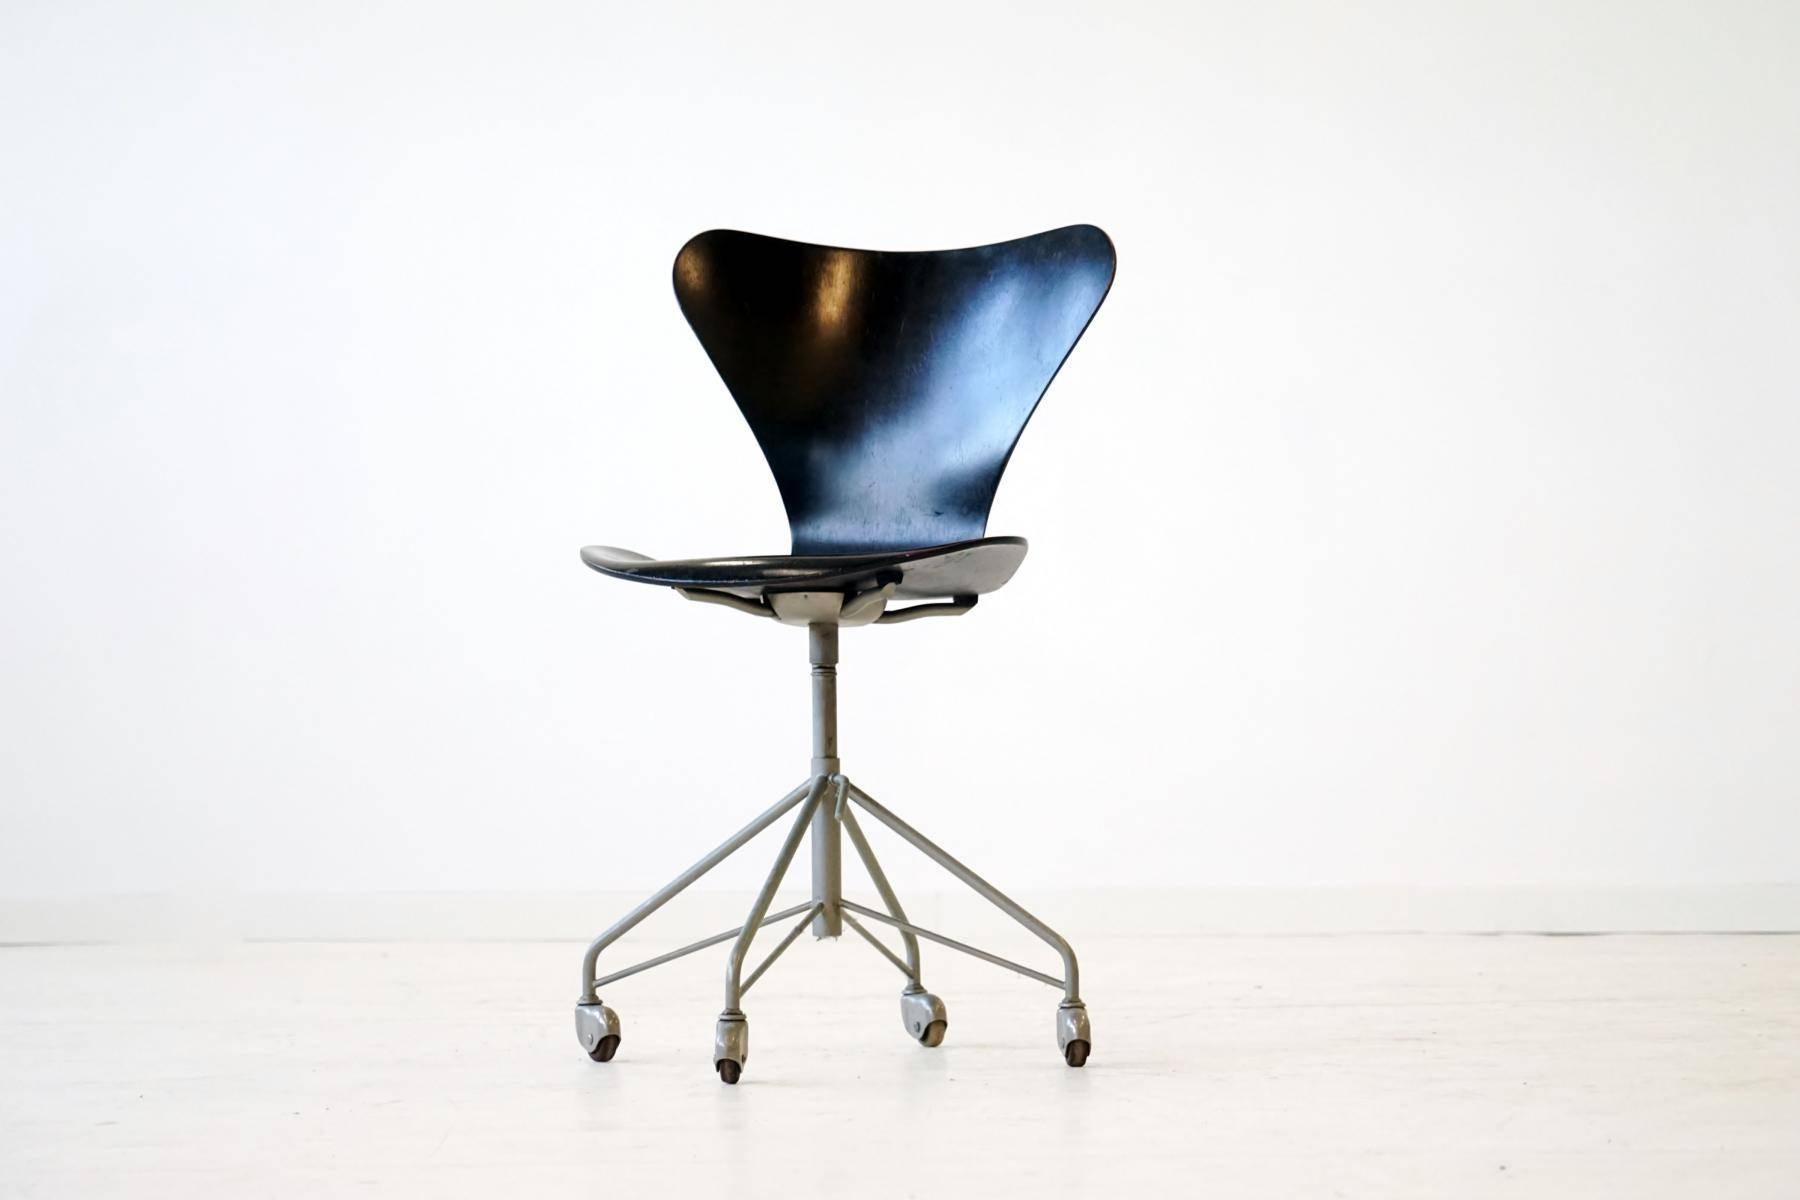 Office chair by Arne Jacobsen for Fritz Hansen 
Model 3117, year of design: 1956.